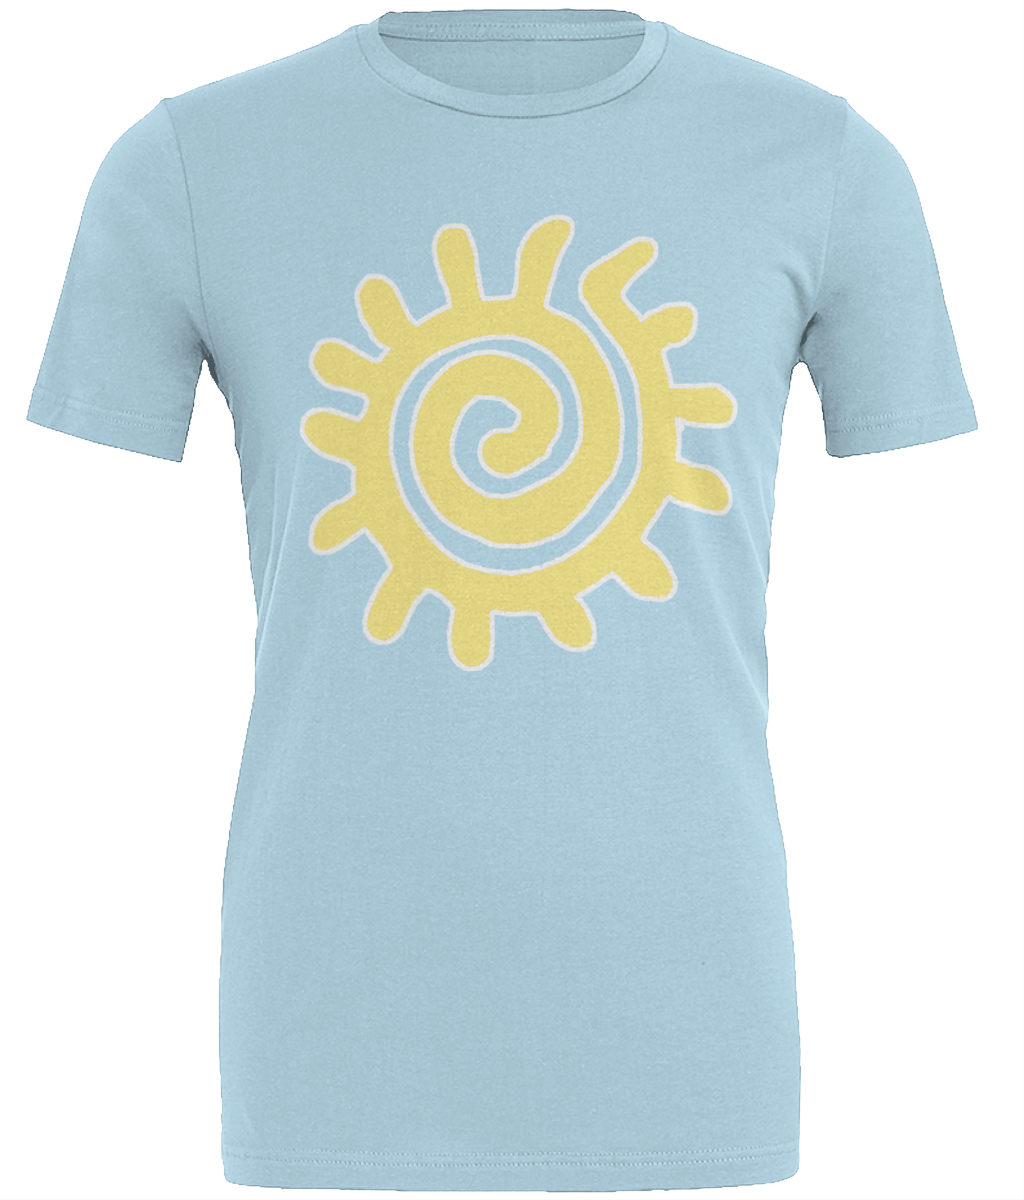 Sun-Spiral-T-Shirt